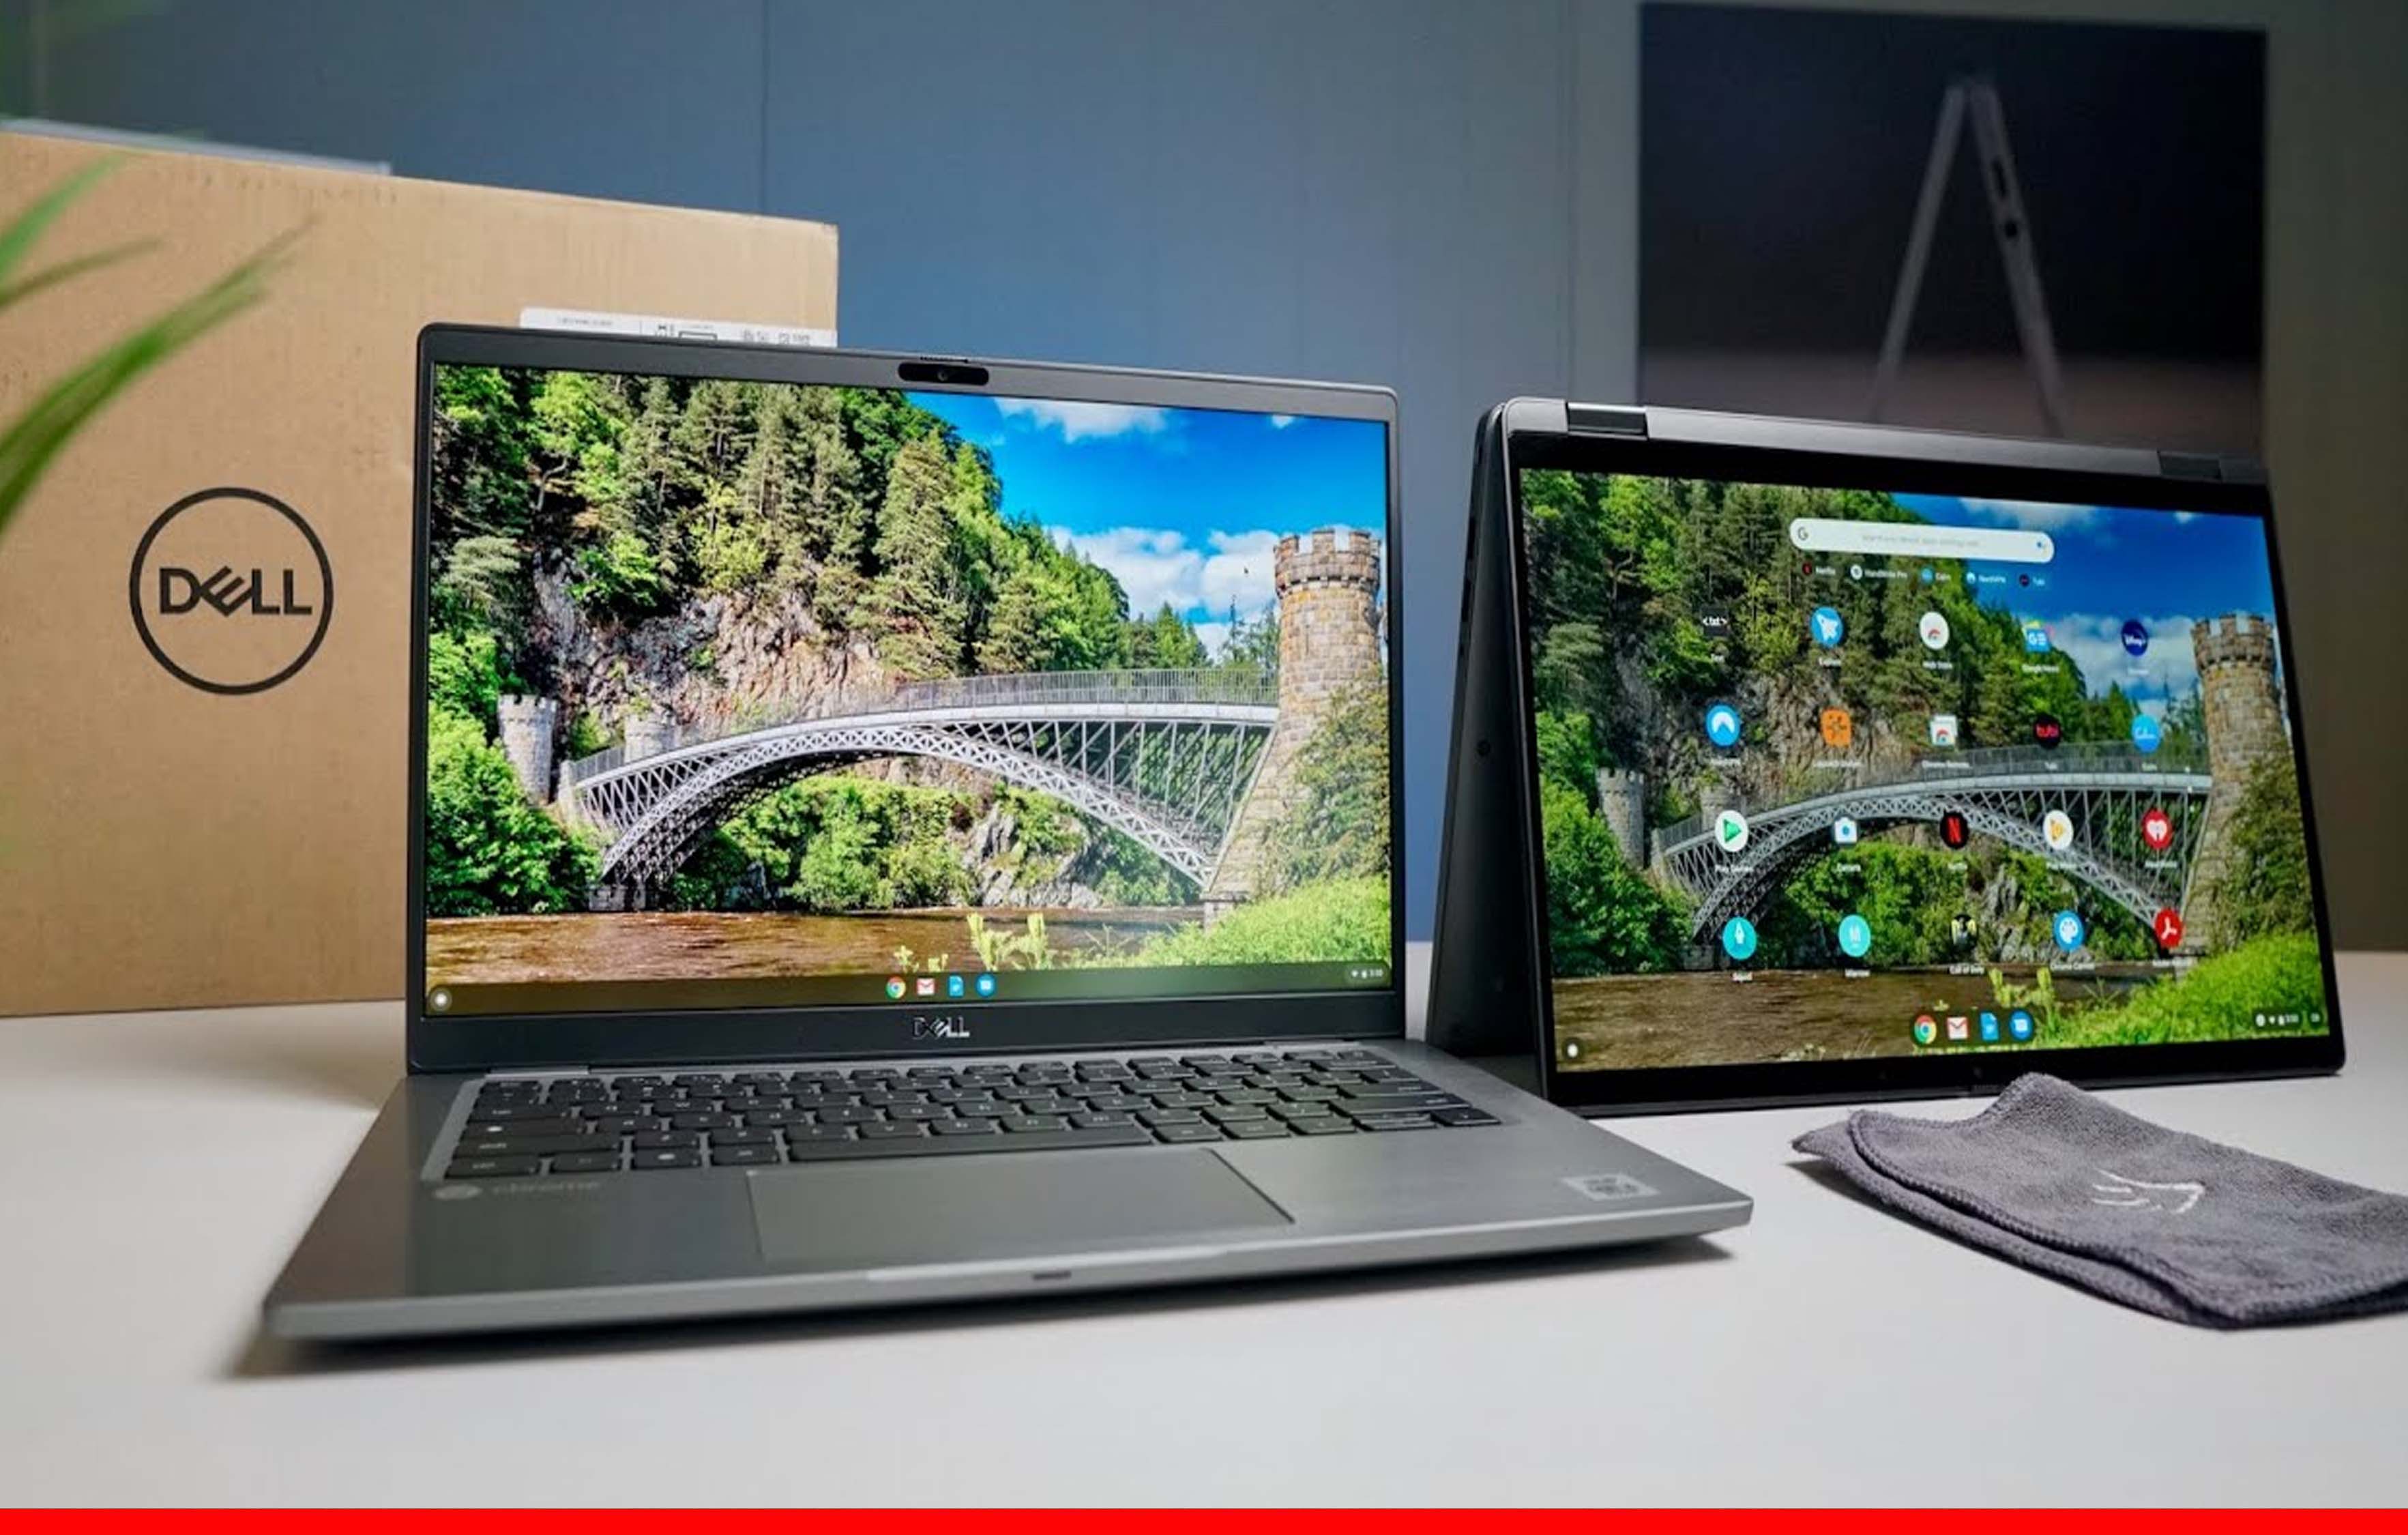 Dell ने लॉन्च किया नए रेंज के लैपटॉप और डेस्कटॉप